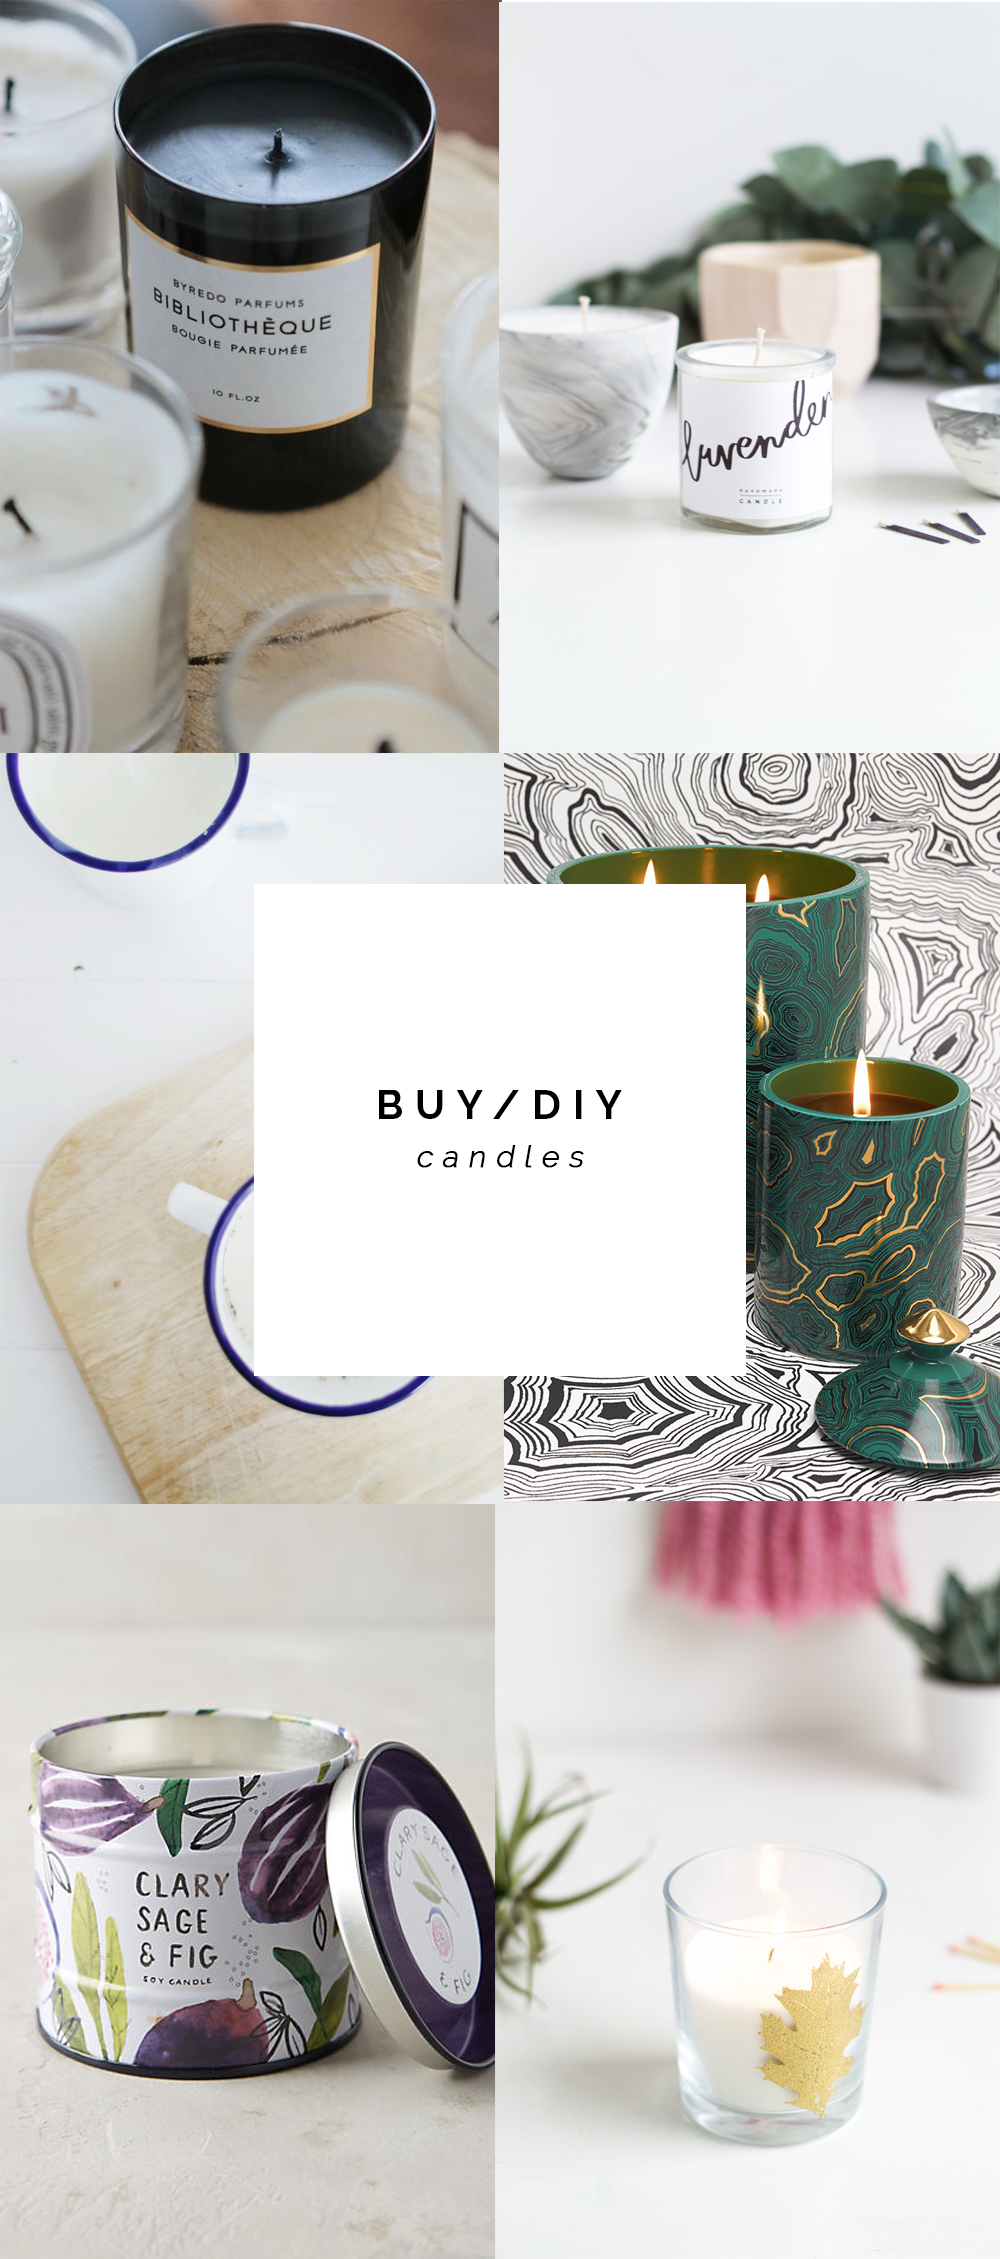 BUY/DIY Candles